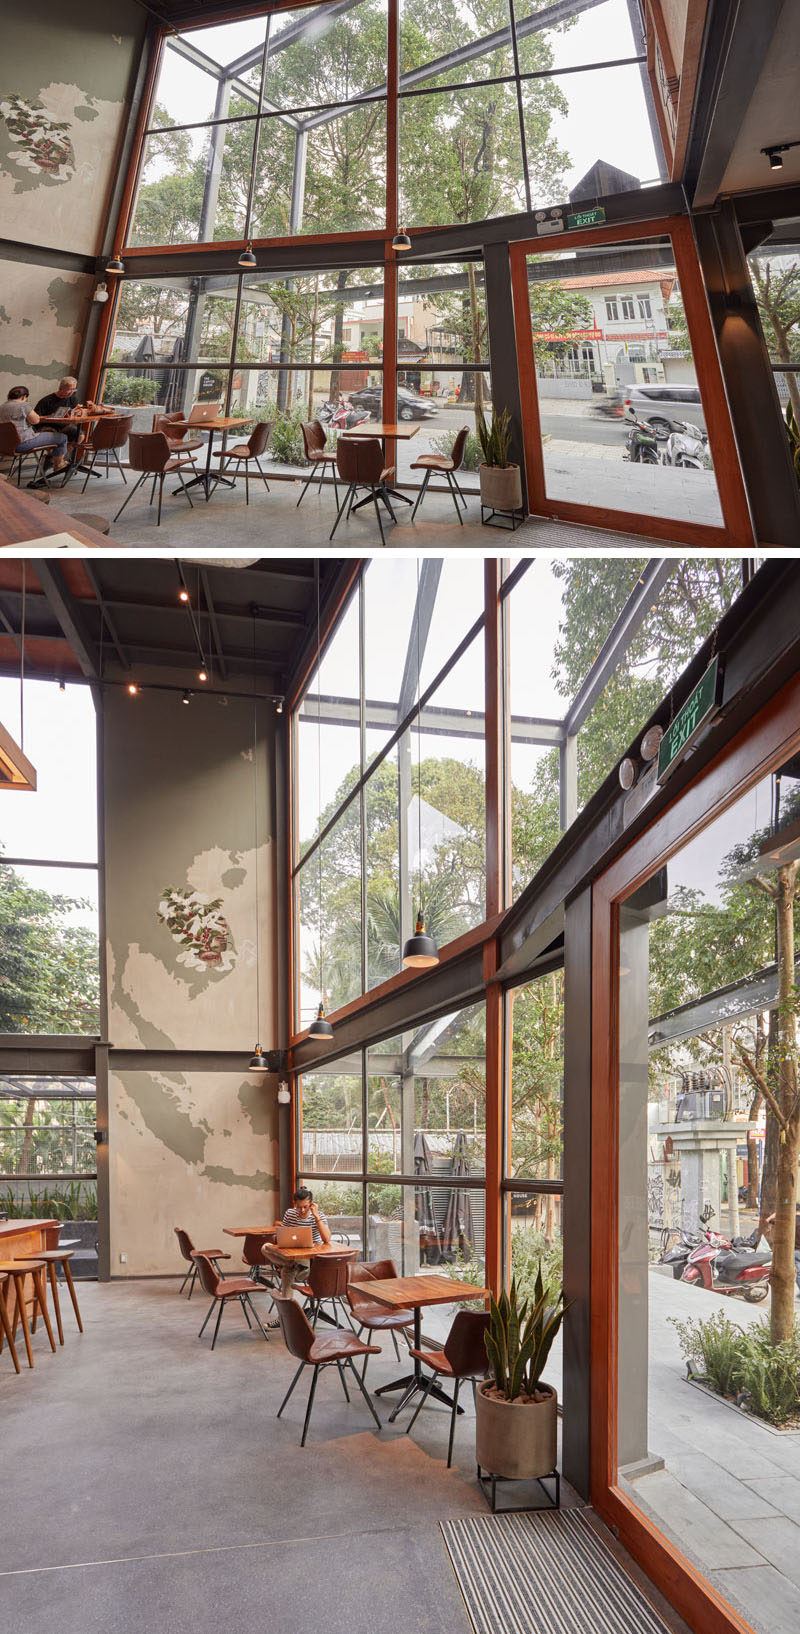  Большая стена из окон заливает интерьер современной кофейни естественным светом, а сиденья, расположенные рядом с окнами, пользуются посетителями вид на улицу. #CoffeeShop #Windows # Архитектура 